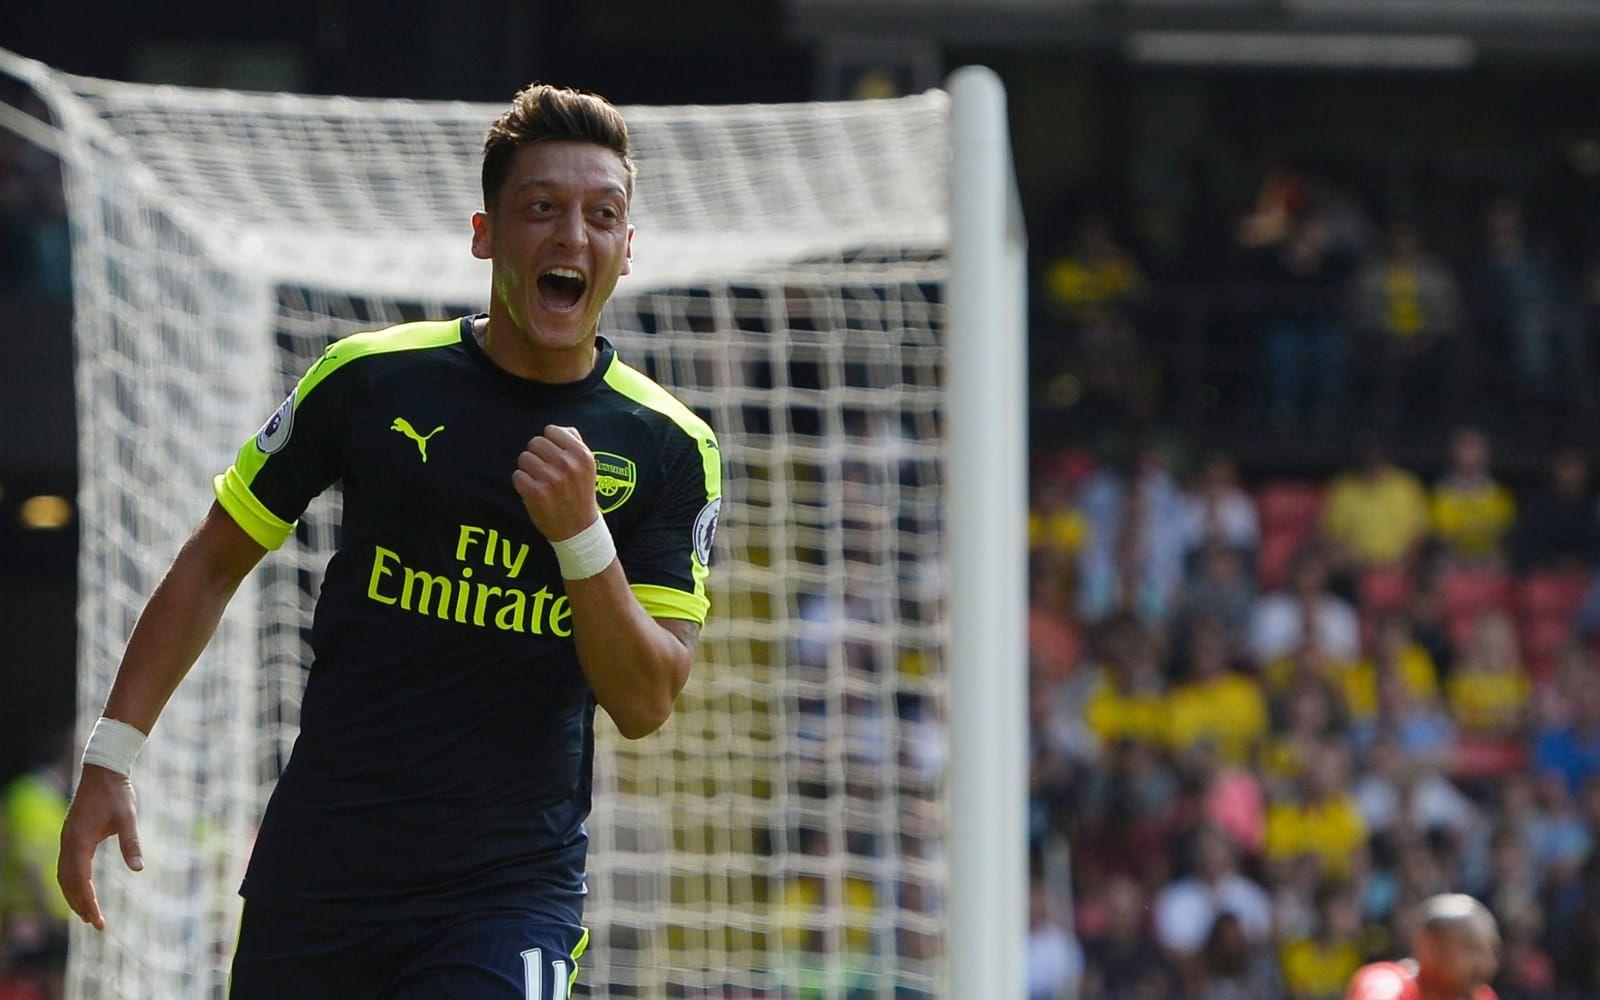 Mesut Özil, Arsenal, 58,7 miljoner pund. Två stora övergångar, först till Real Madrid och sedan till Gunners gör att tysken kniper tiondeplatsen. Foto: Bildbyrån